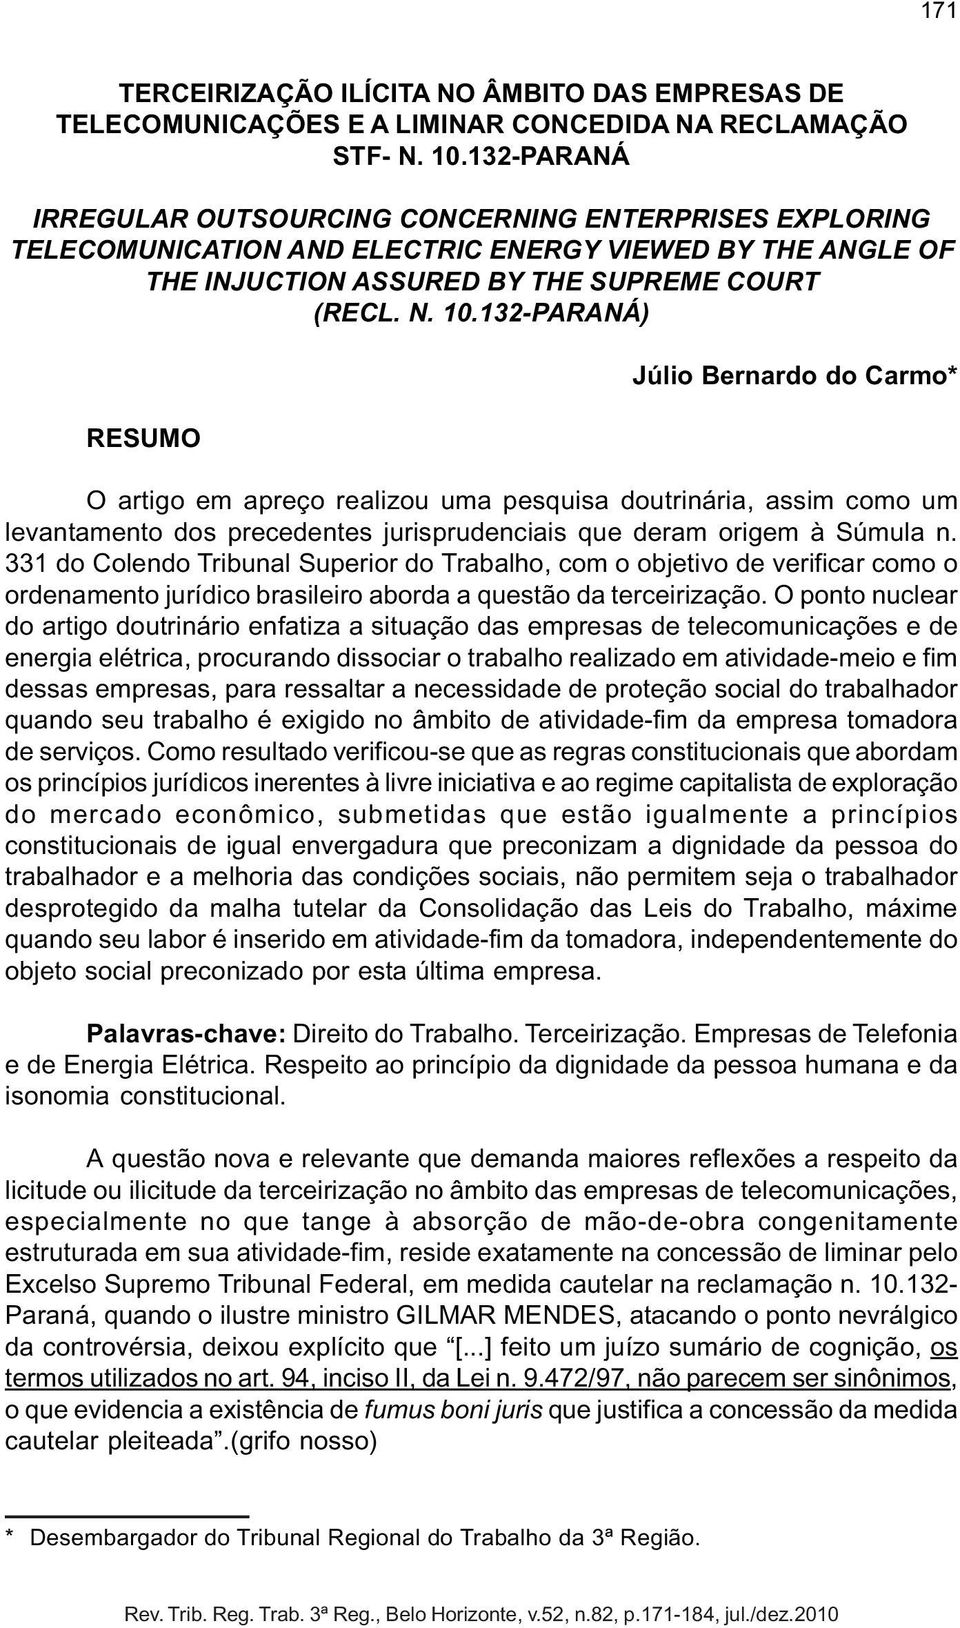 132-PARANÁ) RESUMO Júlio Bernardo do Carmo* O artigo em apreço realizou uma pesquisa doutrinária, assim como um levantamento dos precedentes jurisprudenciais que deram origem à Súmula n.